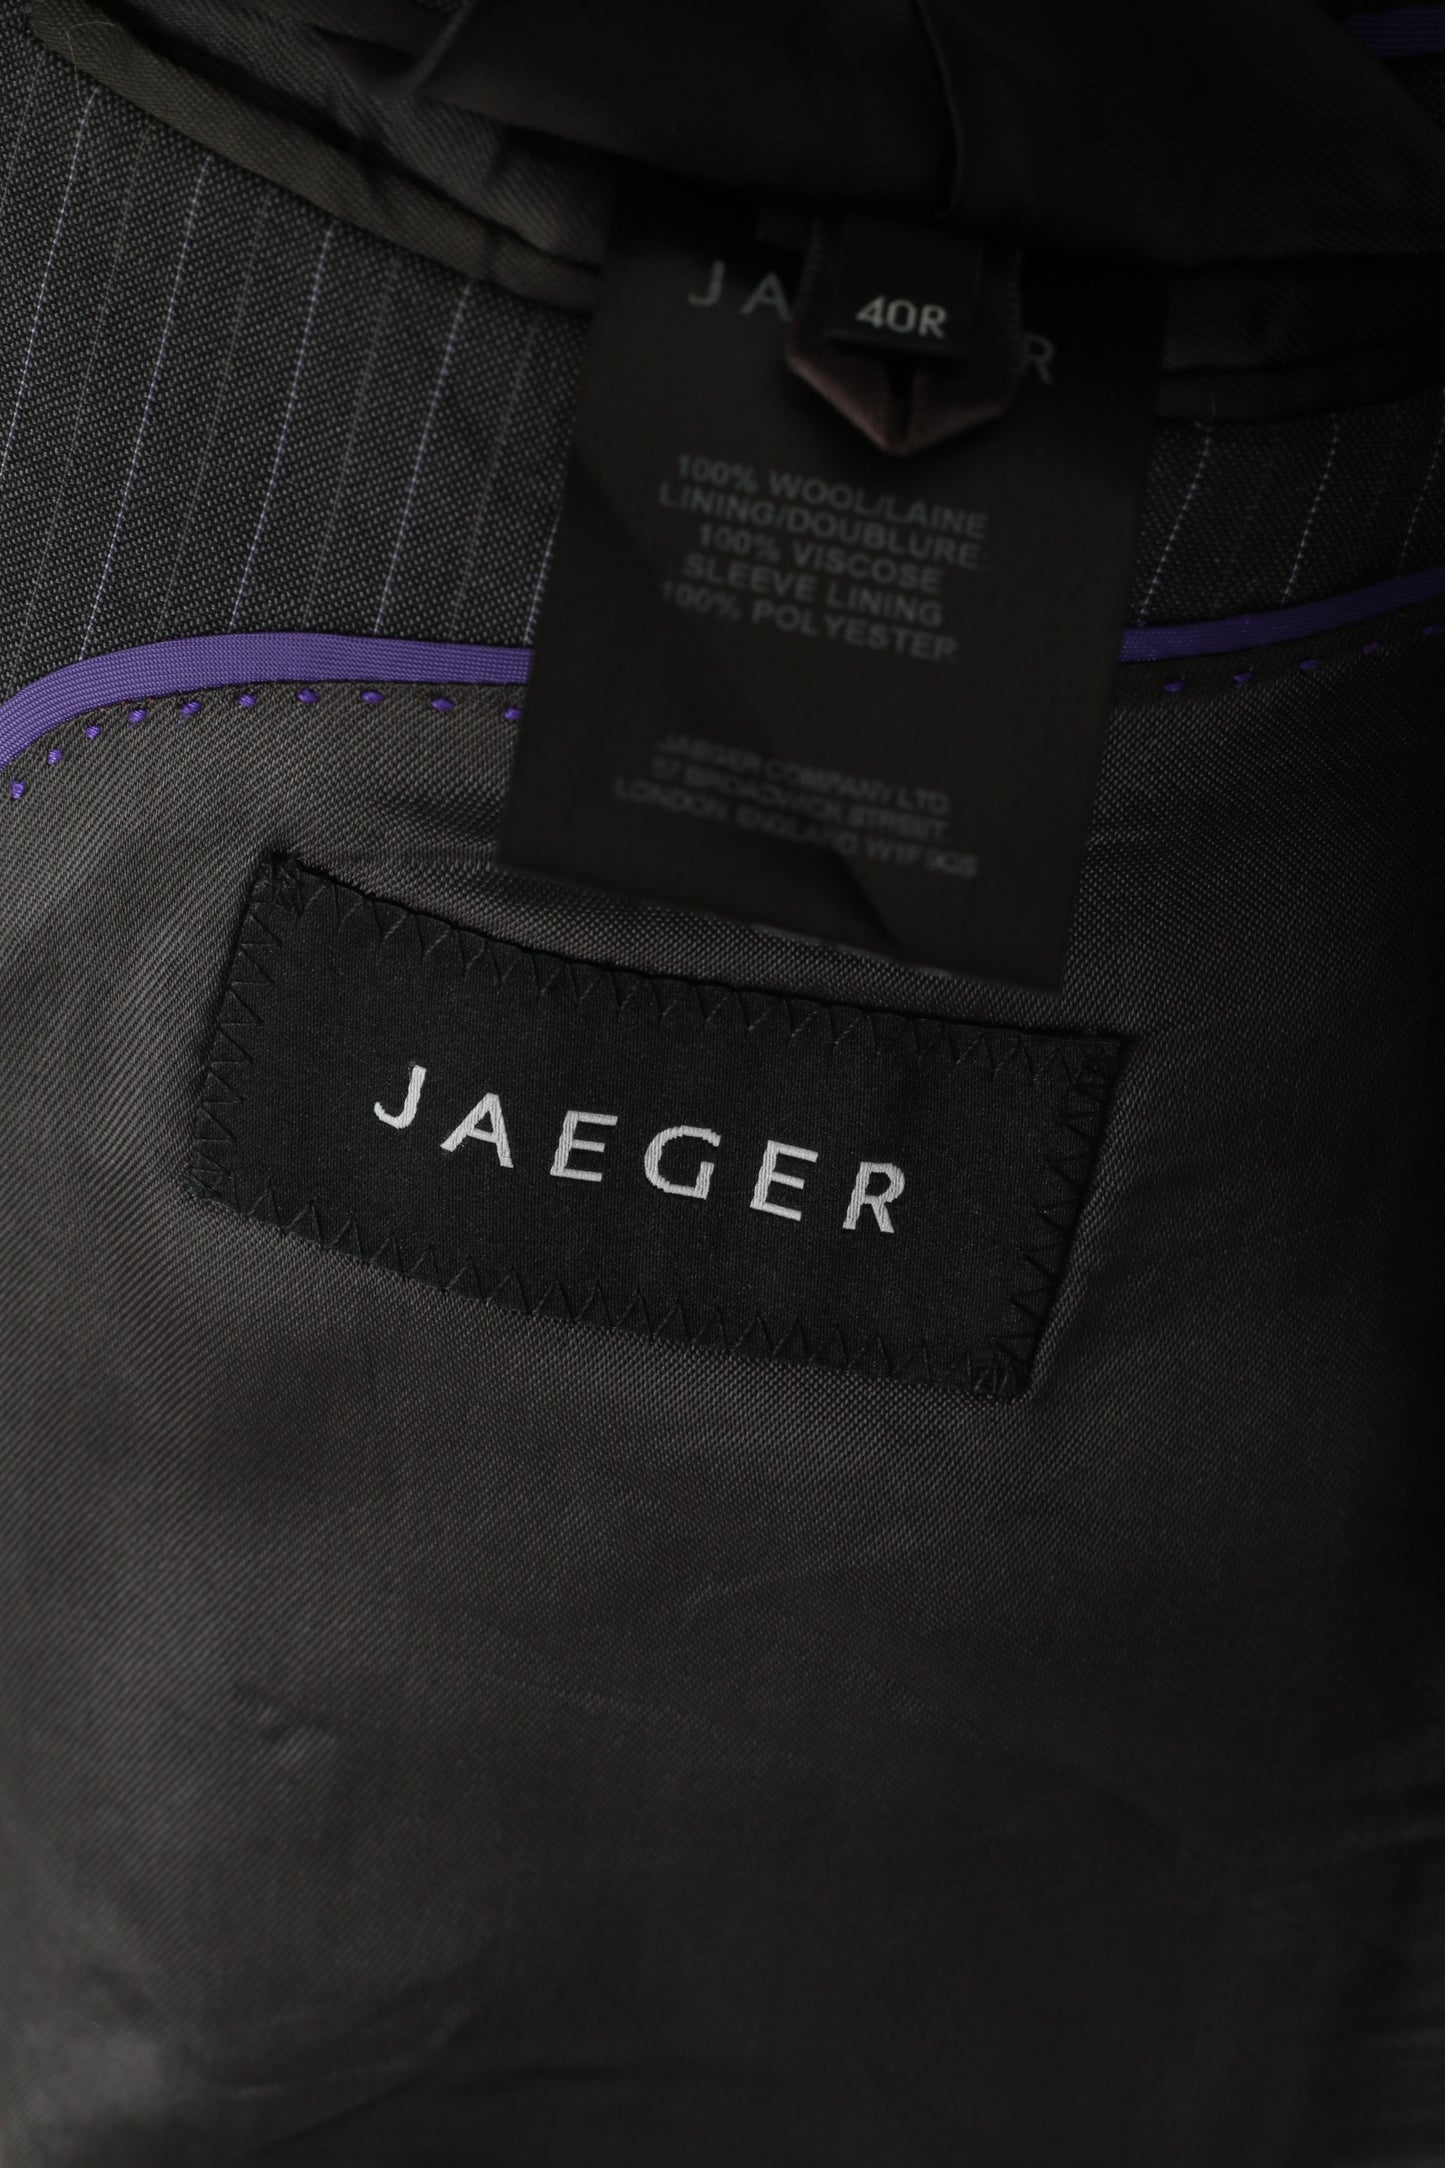 Jaeger Uomo 40 50 Blazer Giacca monopetto in lana a righe grafite